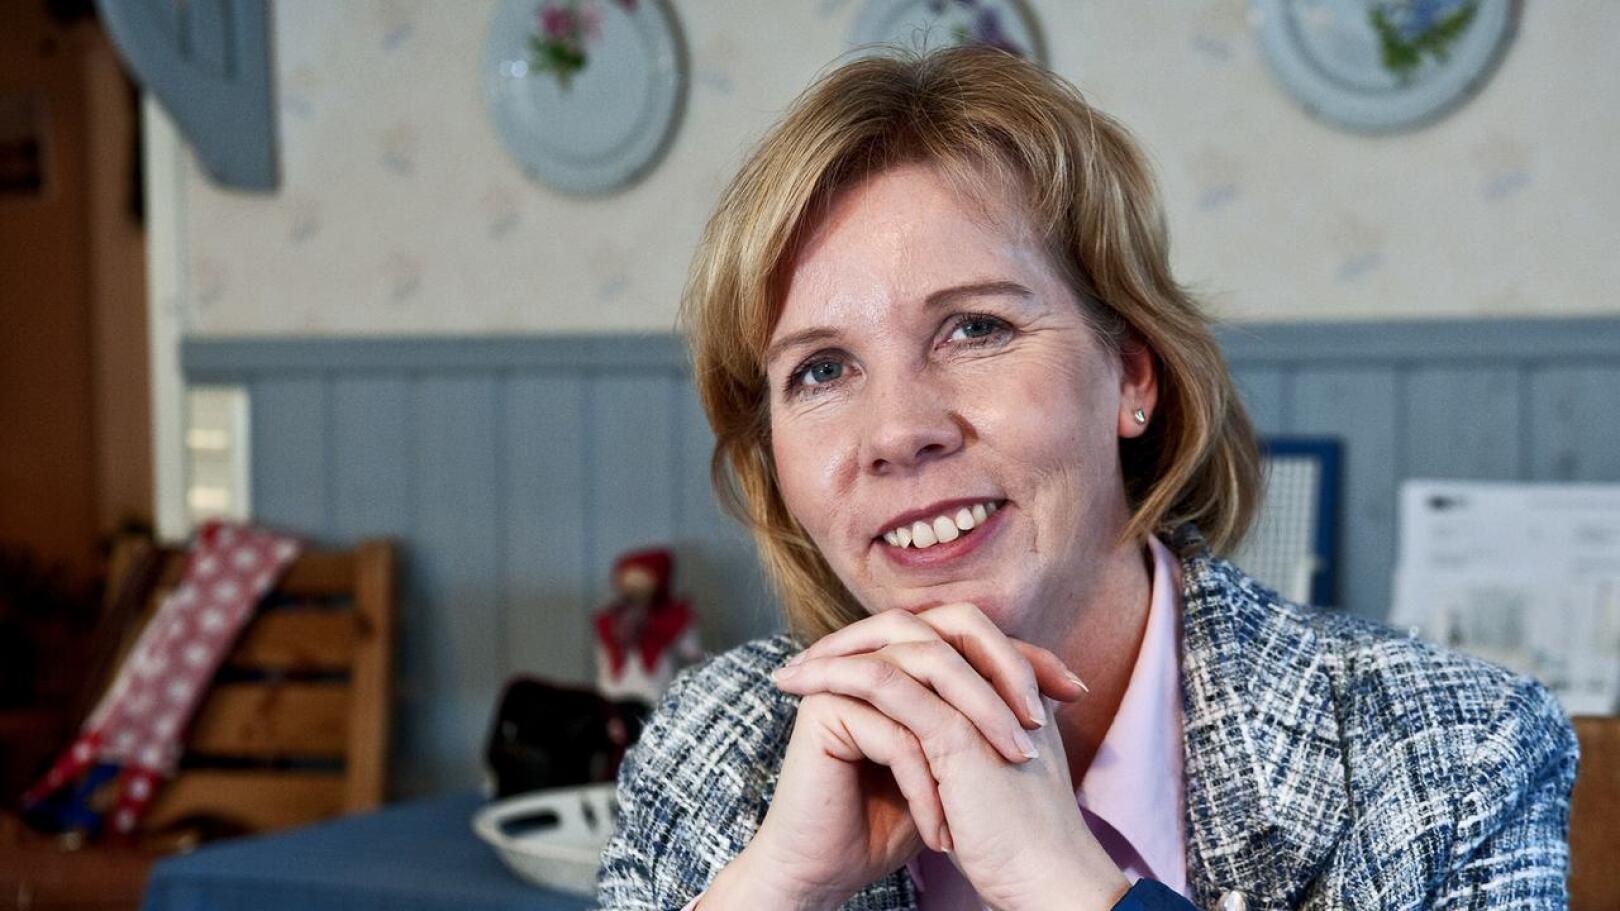 Oikeusministeri Anna-Maja Henriksson kertoi, että RKP on juuri perustanut uuden yhdistyksen: Tukholman RKP:n.